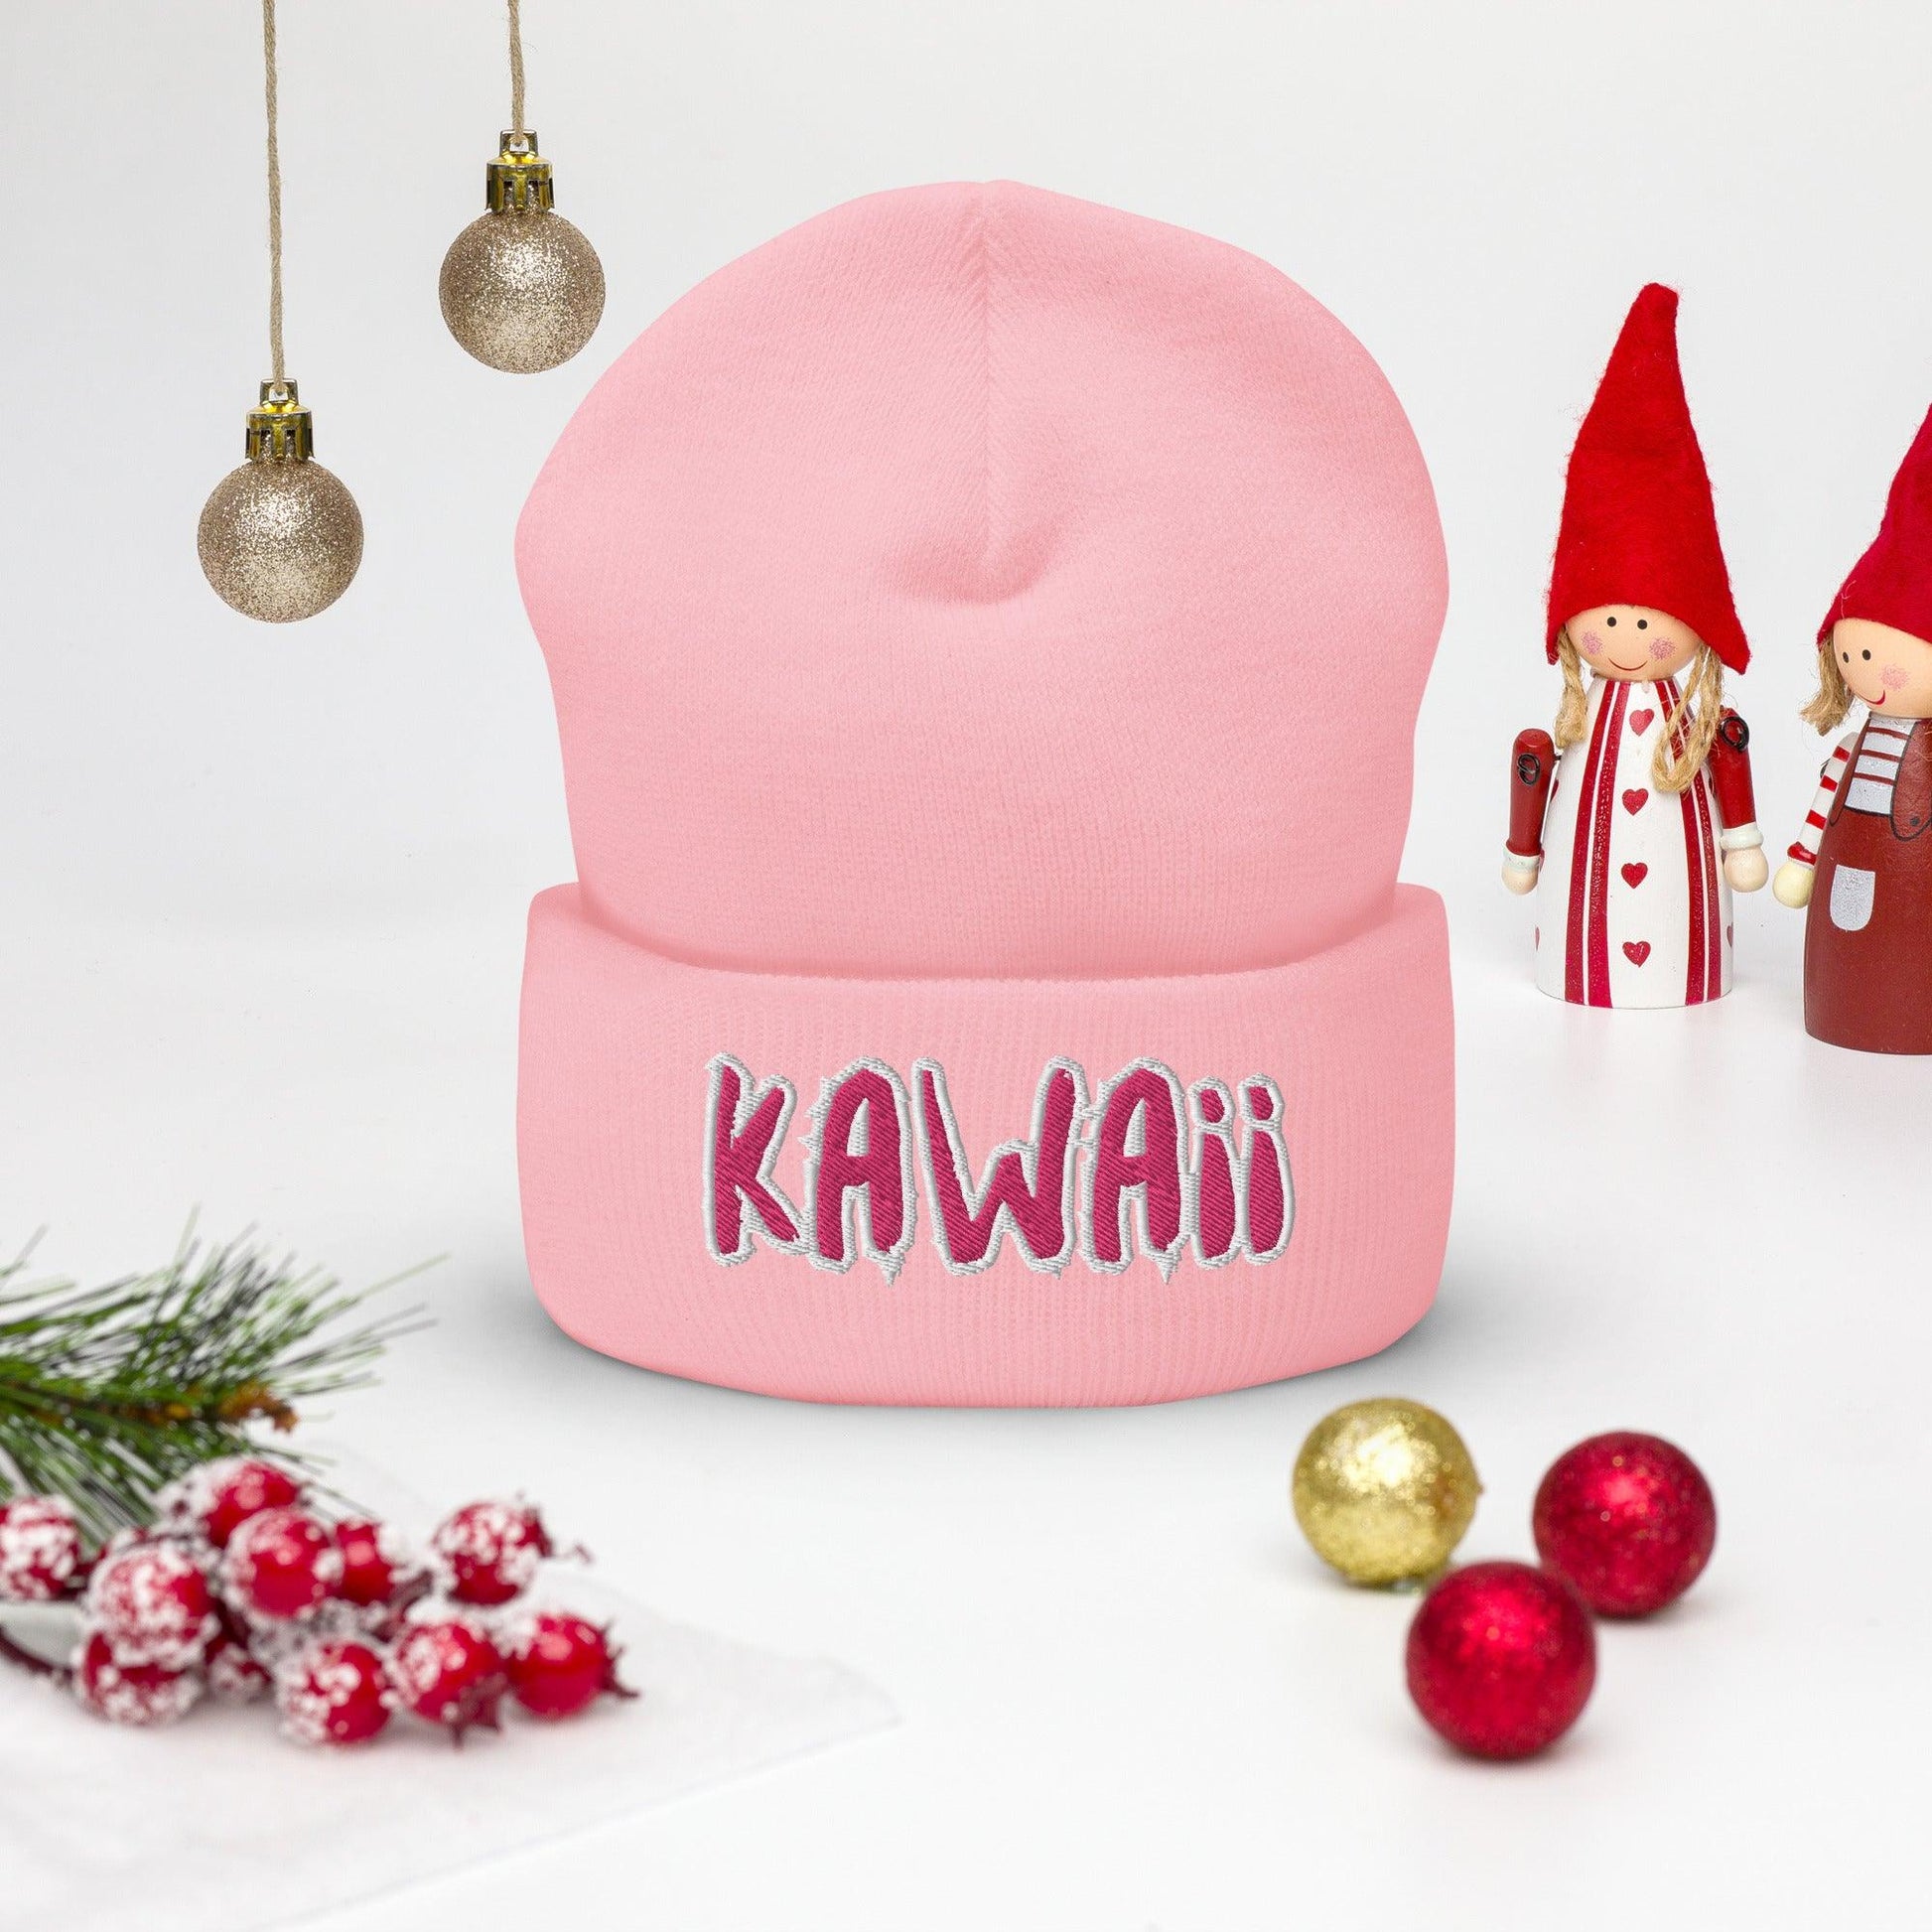 Pink Kawaii Beanie - Kawaii for the Culture